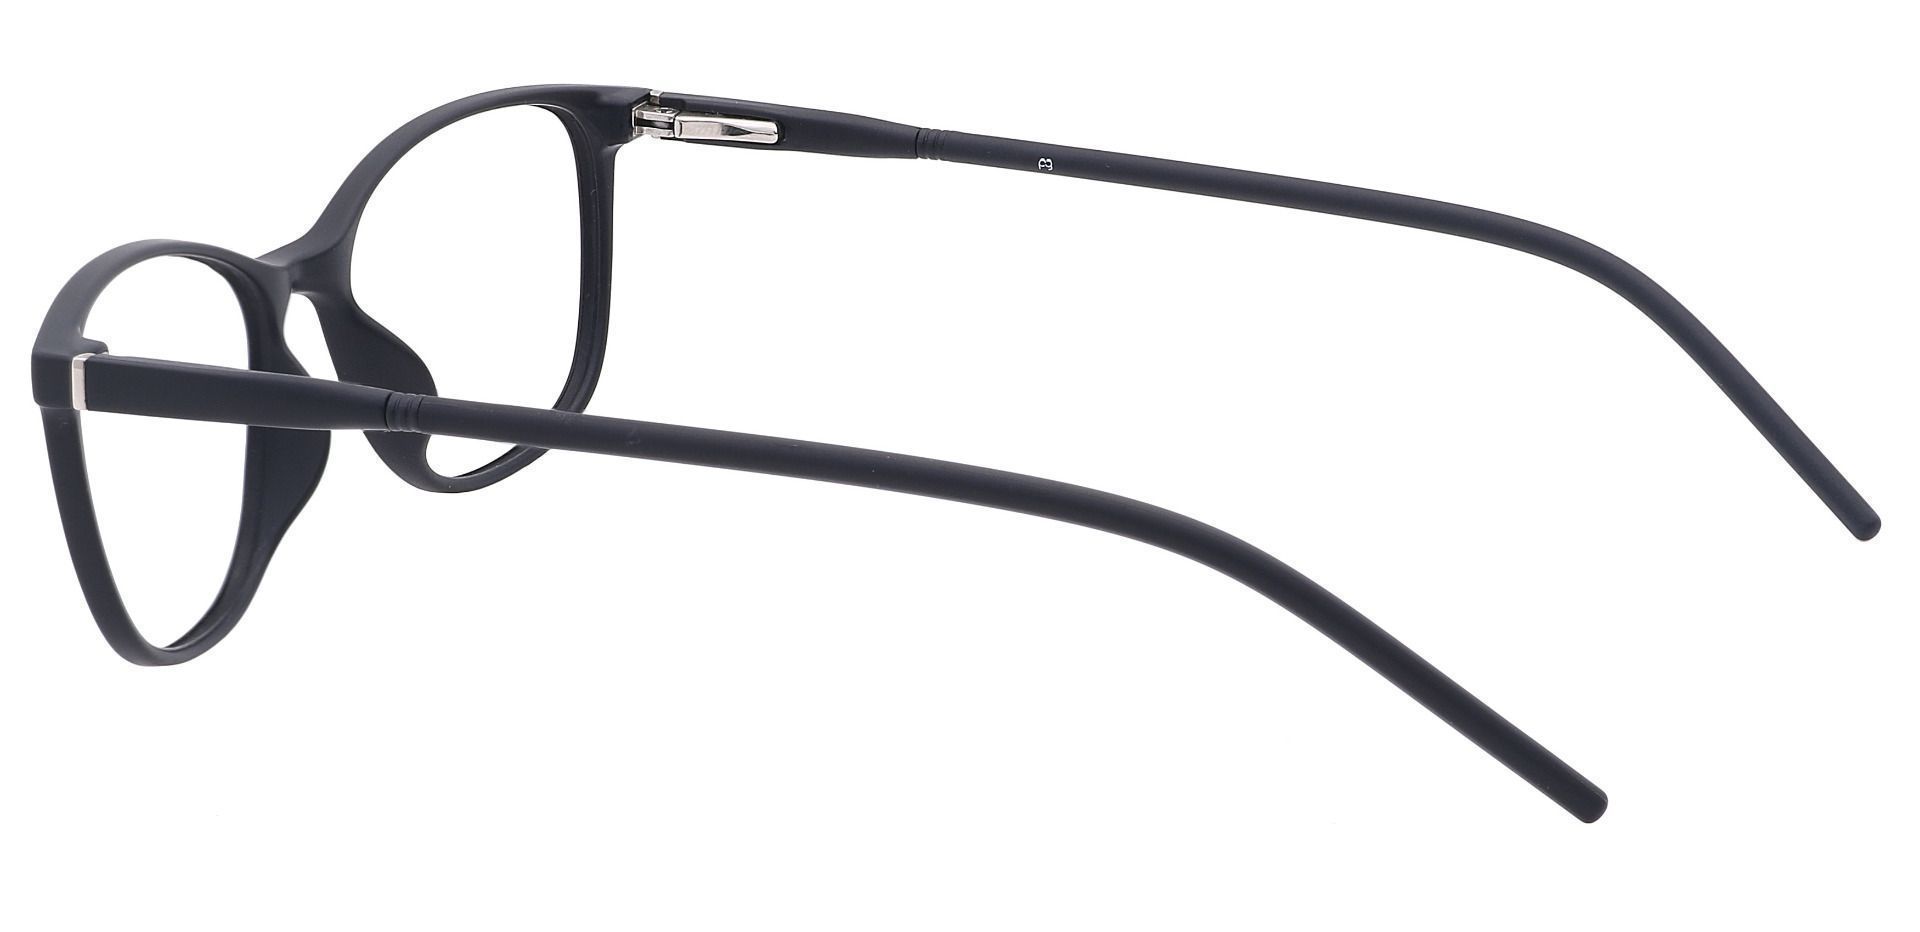 Hazel Square Lined Bifocal Glasses - Black